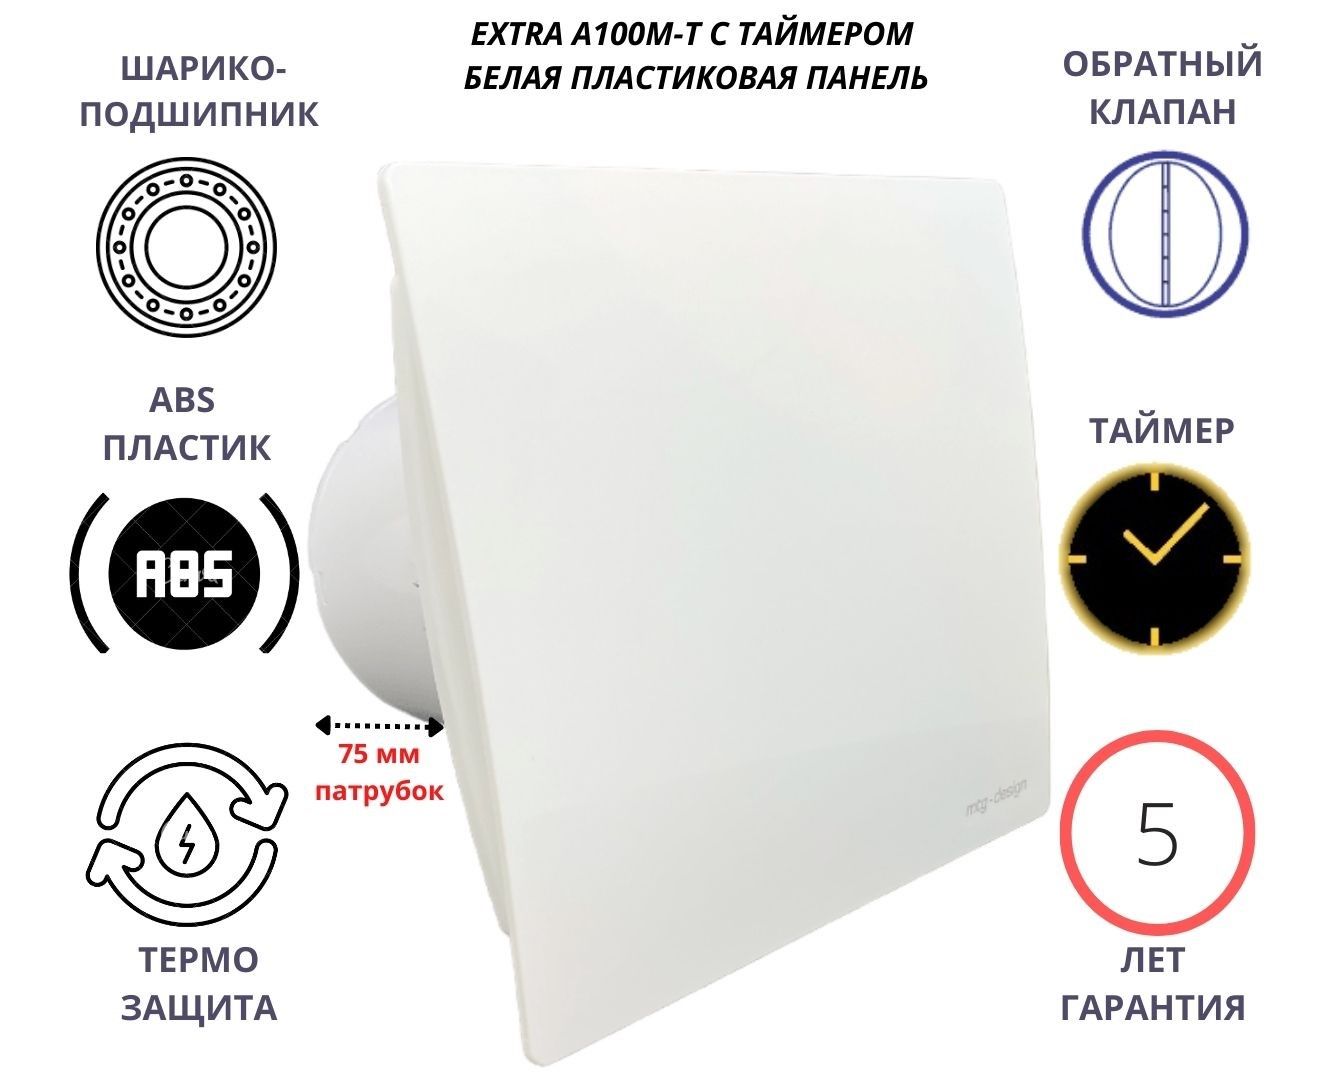 Вентилятор с таймером d100мм с пластиковой панелью A100M-T, Сербия, белый вентилятор mtg с обратным клапаном d100мм a100xm k с плоской пластиковой панелью антрацит